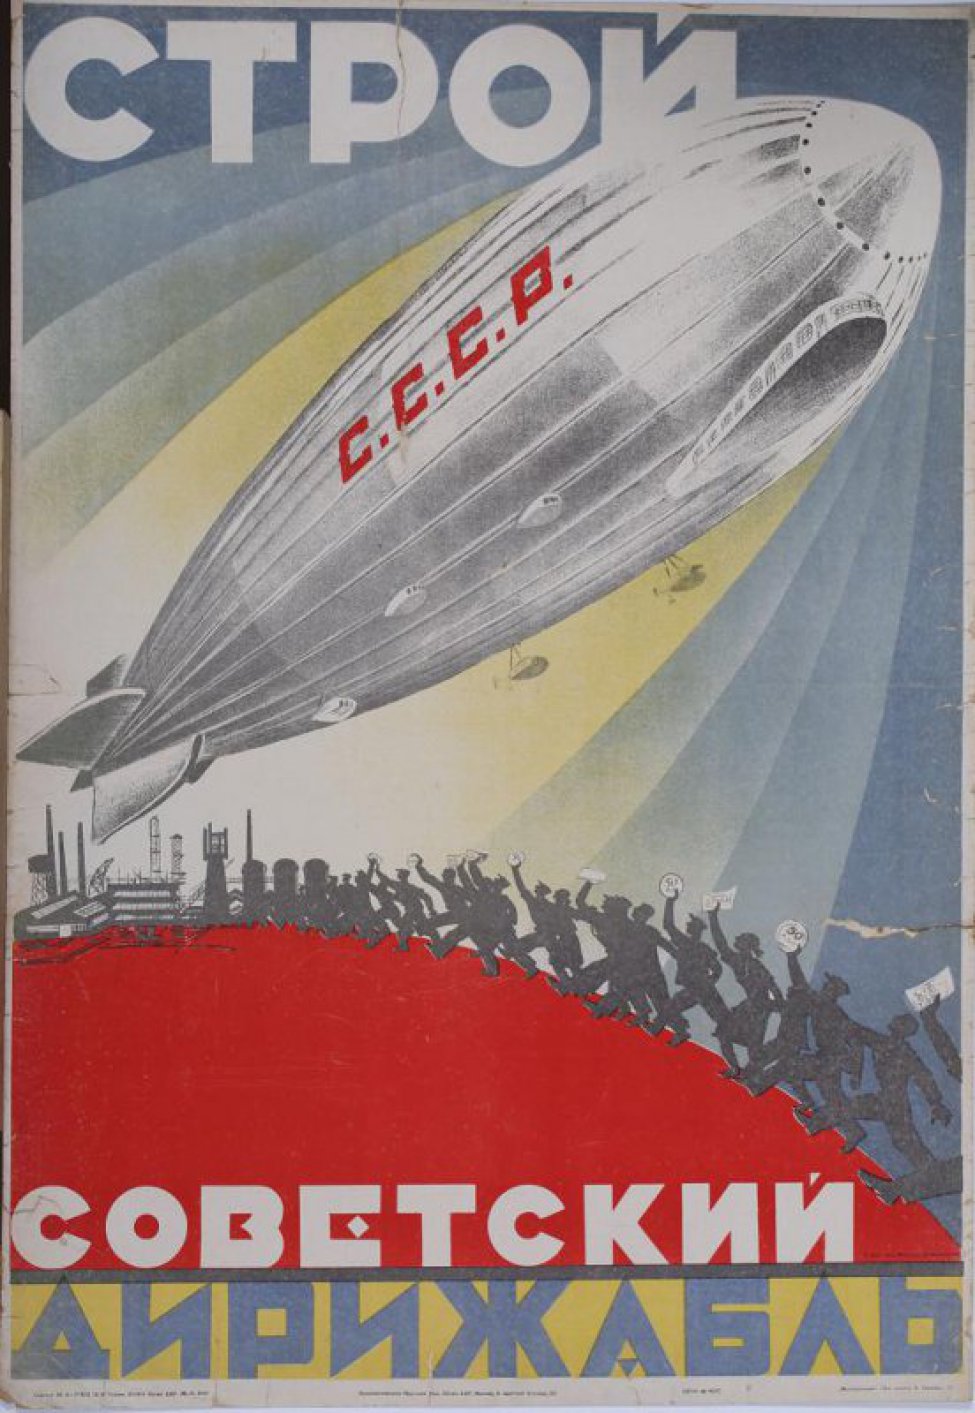 Изображен дирижабль с красными буквами СССР. Ниже идущие  к заводу рабочие несущие свои сбережения на постройку дирижабля.